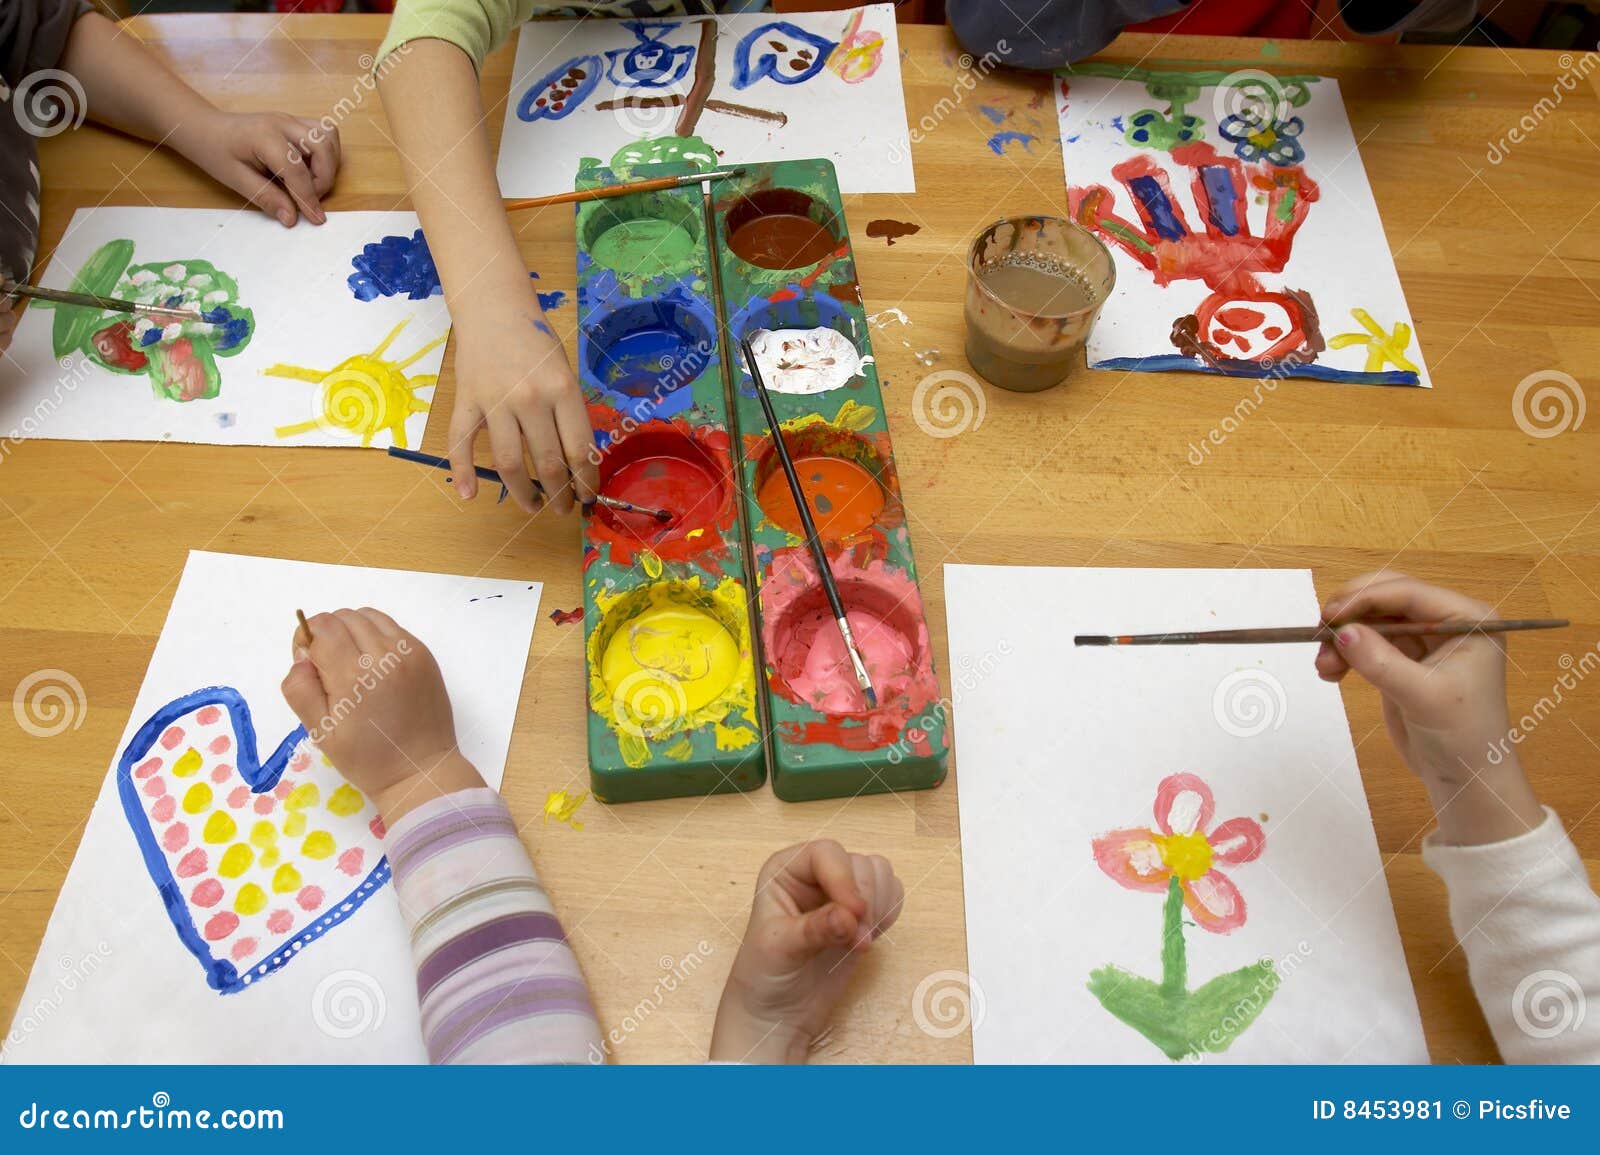 Mogelijk Acteur Heerlijk Het Schilderen Van Kinderen Stock Afbeelding - Image of bureau, kleurrijk:  8453981